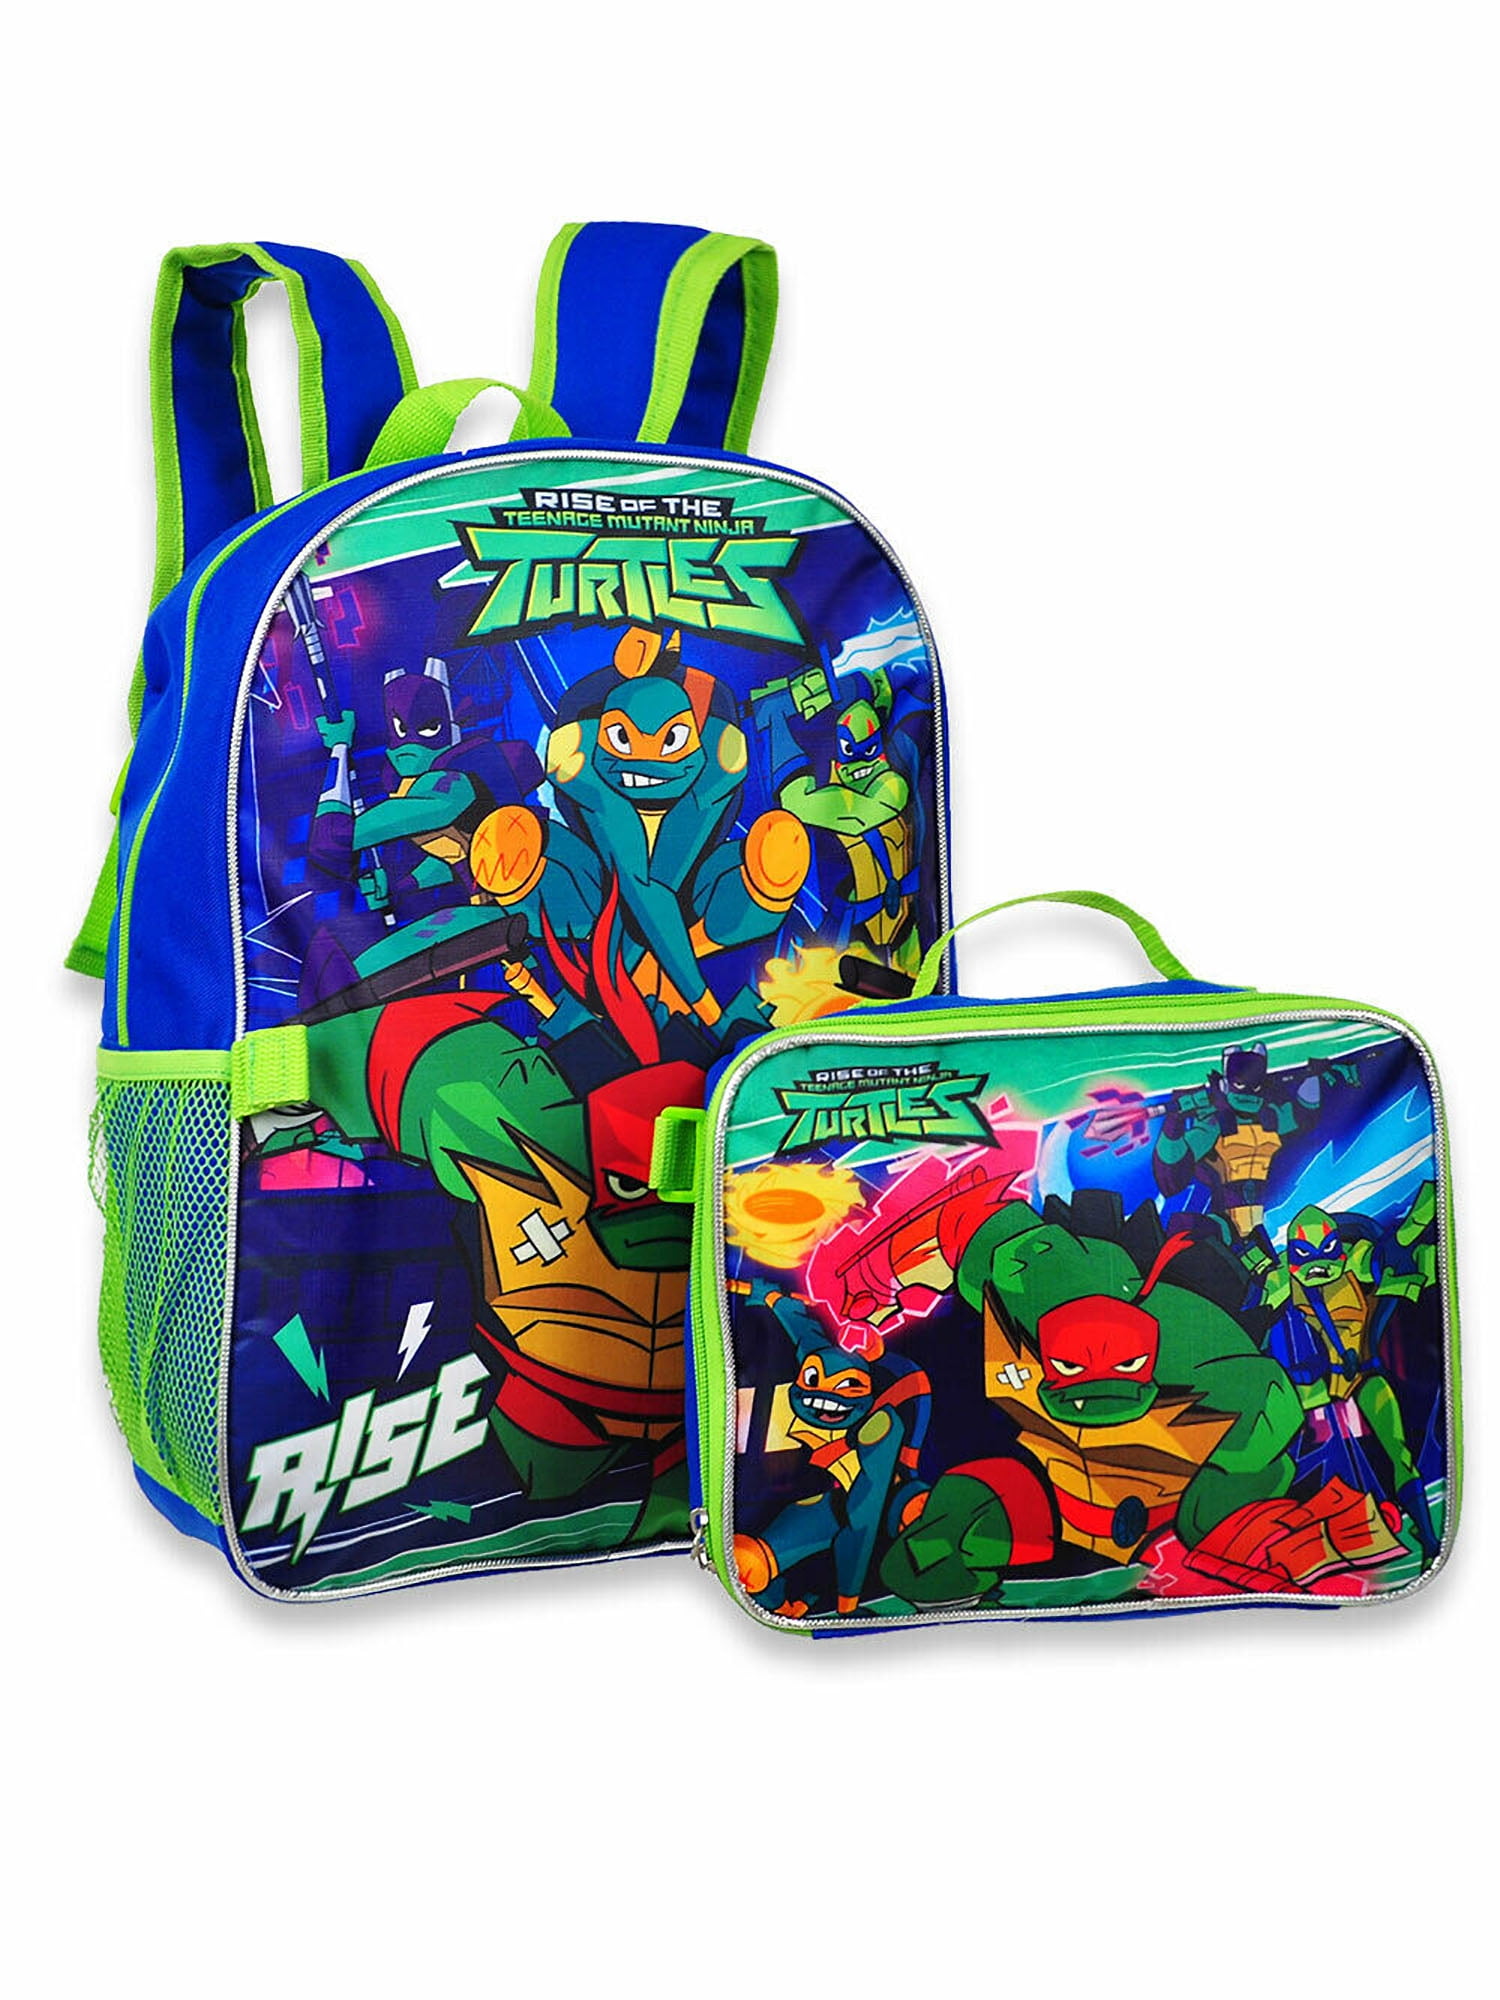 Ninja Turtles Backpack School Travel Lunch Bag Rucksack Teenage Mutant OFFICIAL 